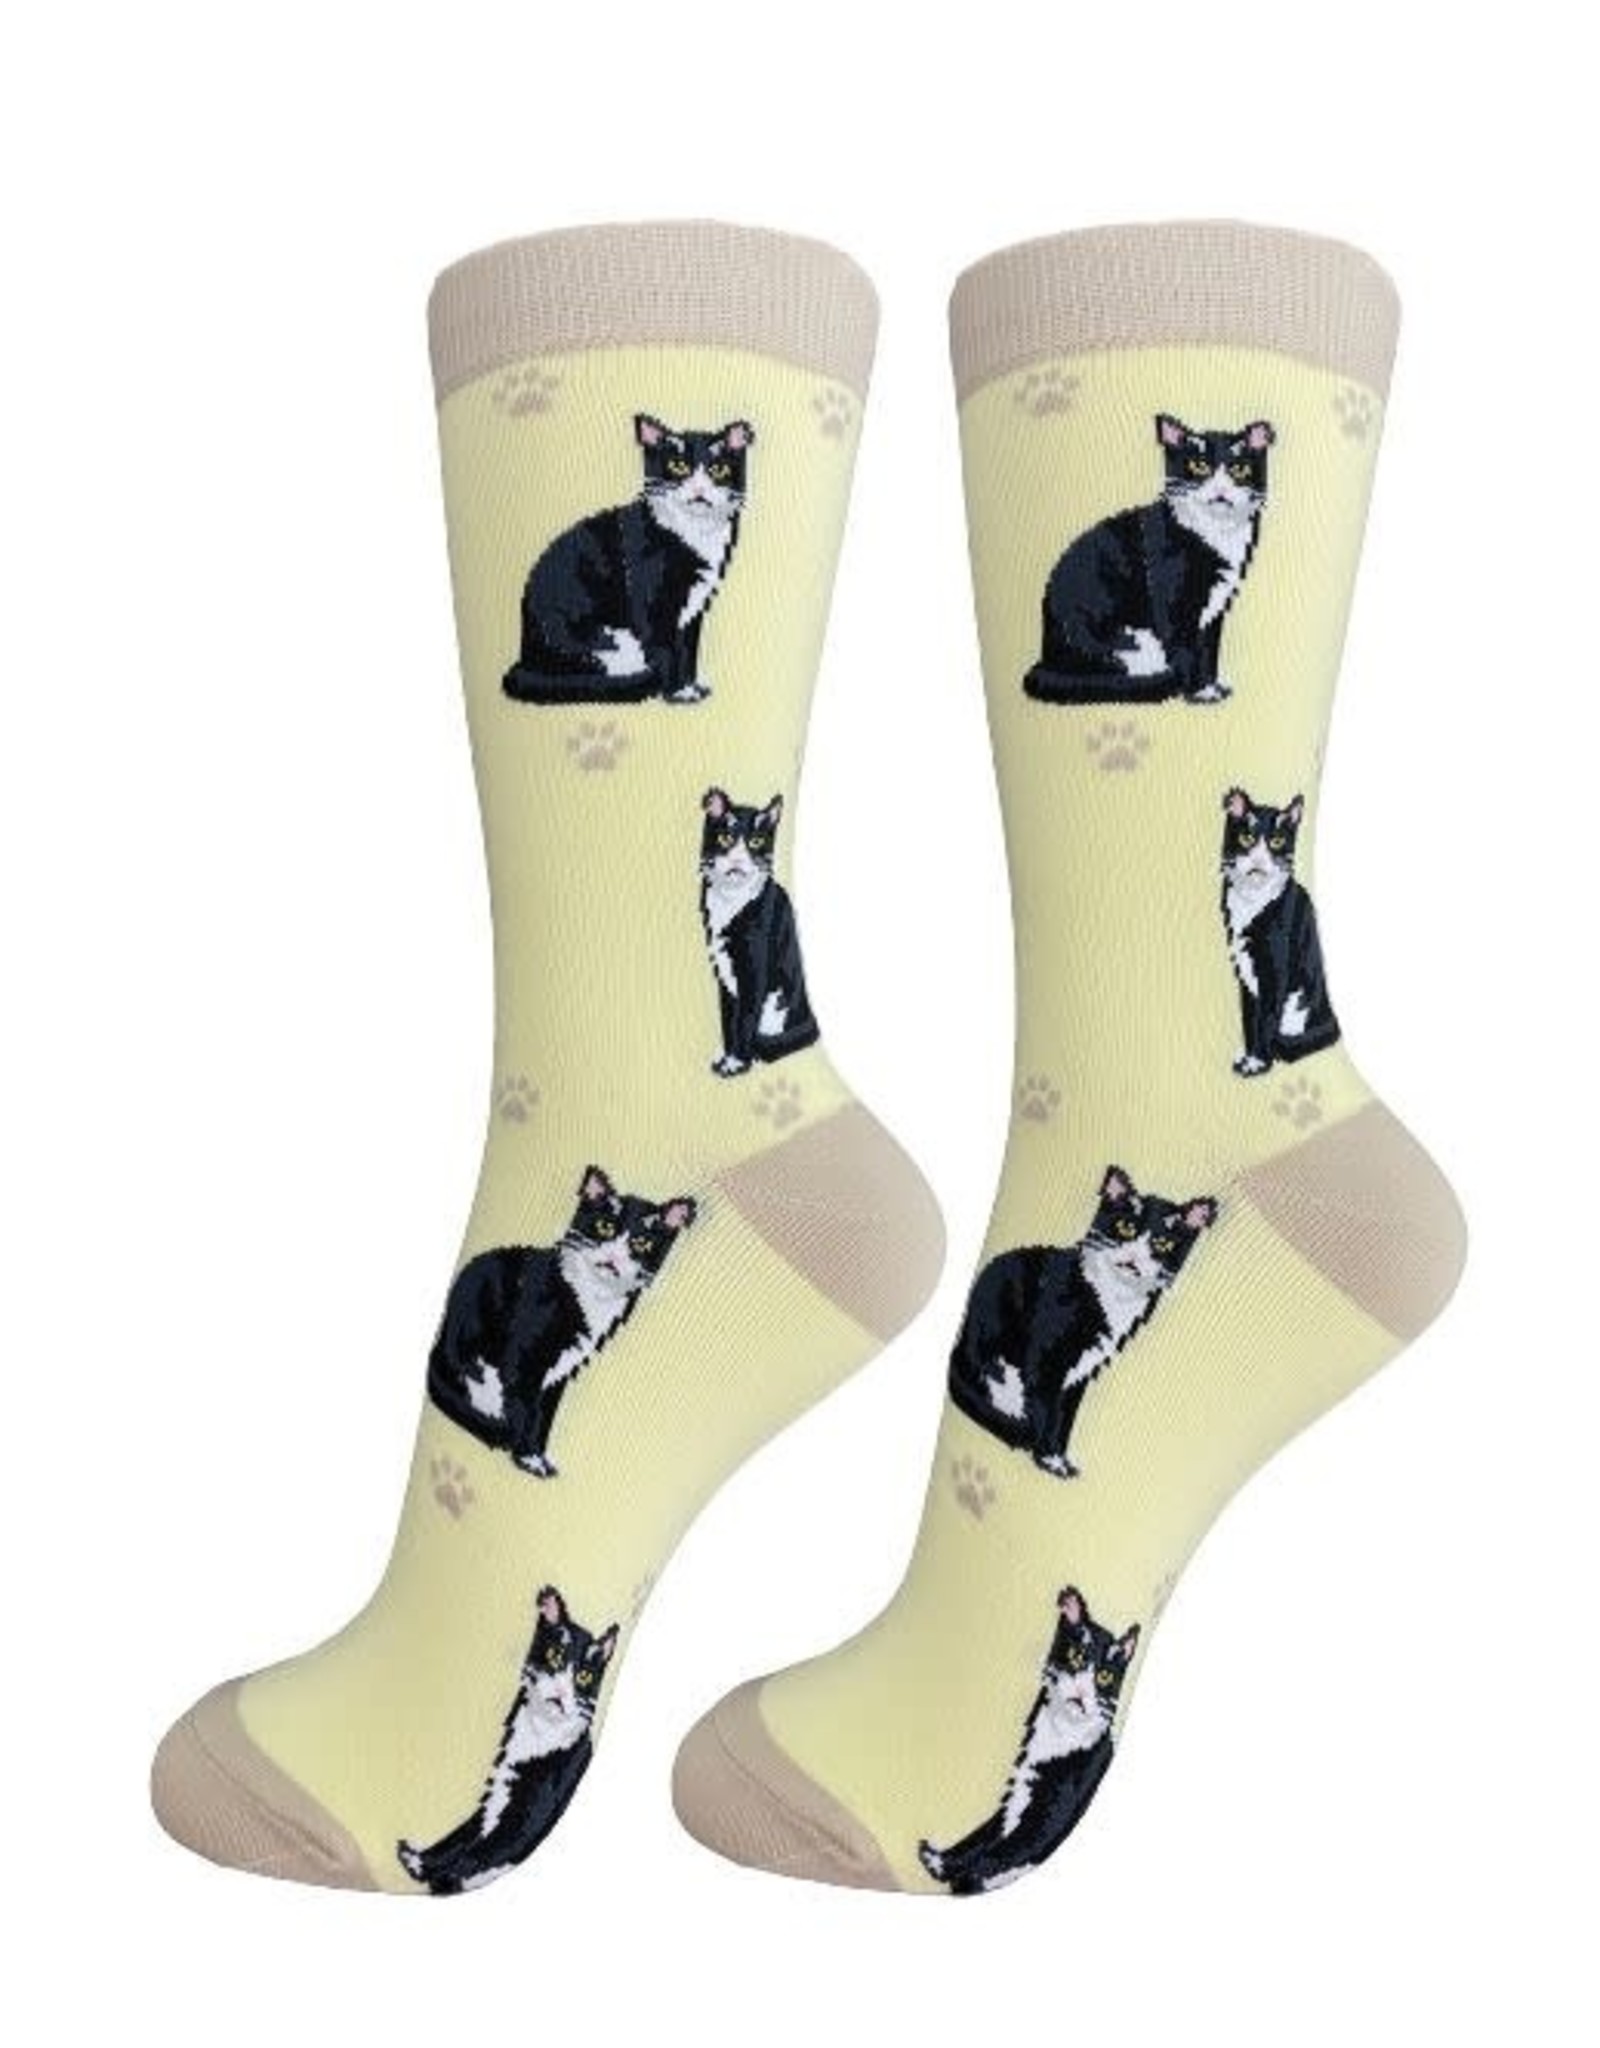 E&S Pets Full Body Black & White Cat Socks